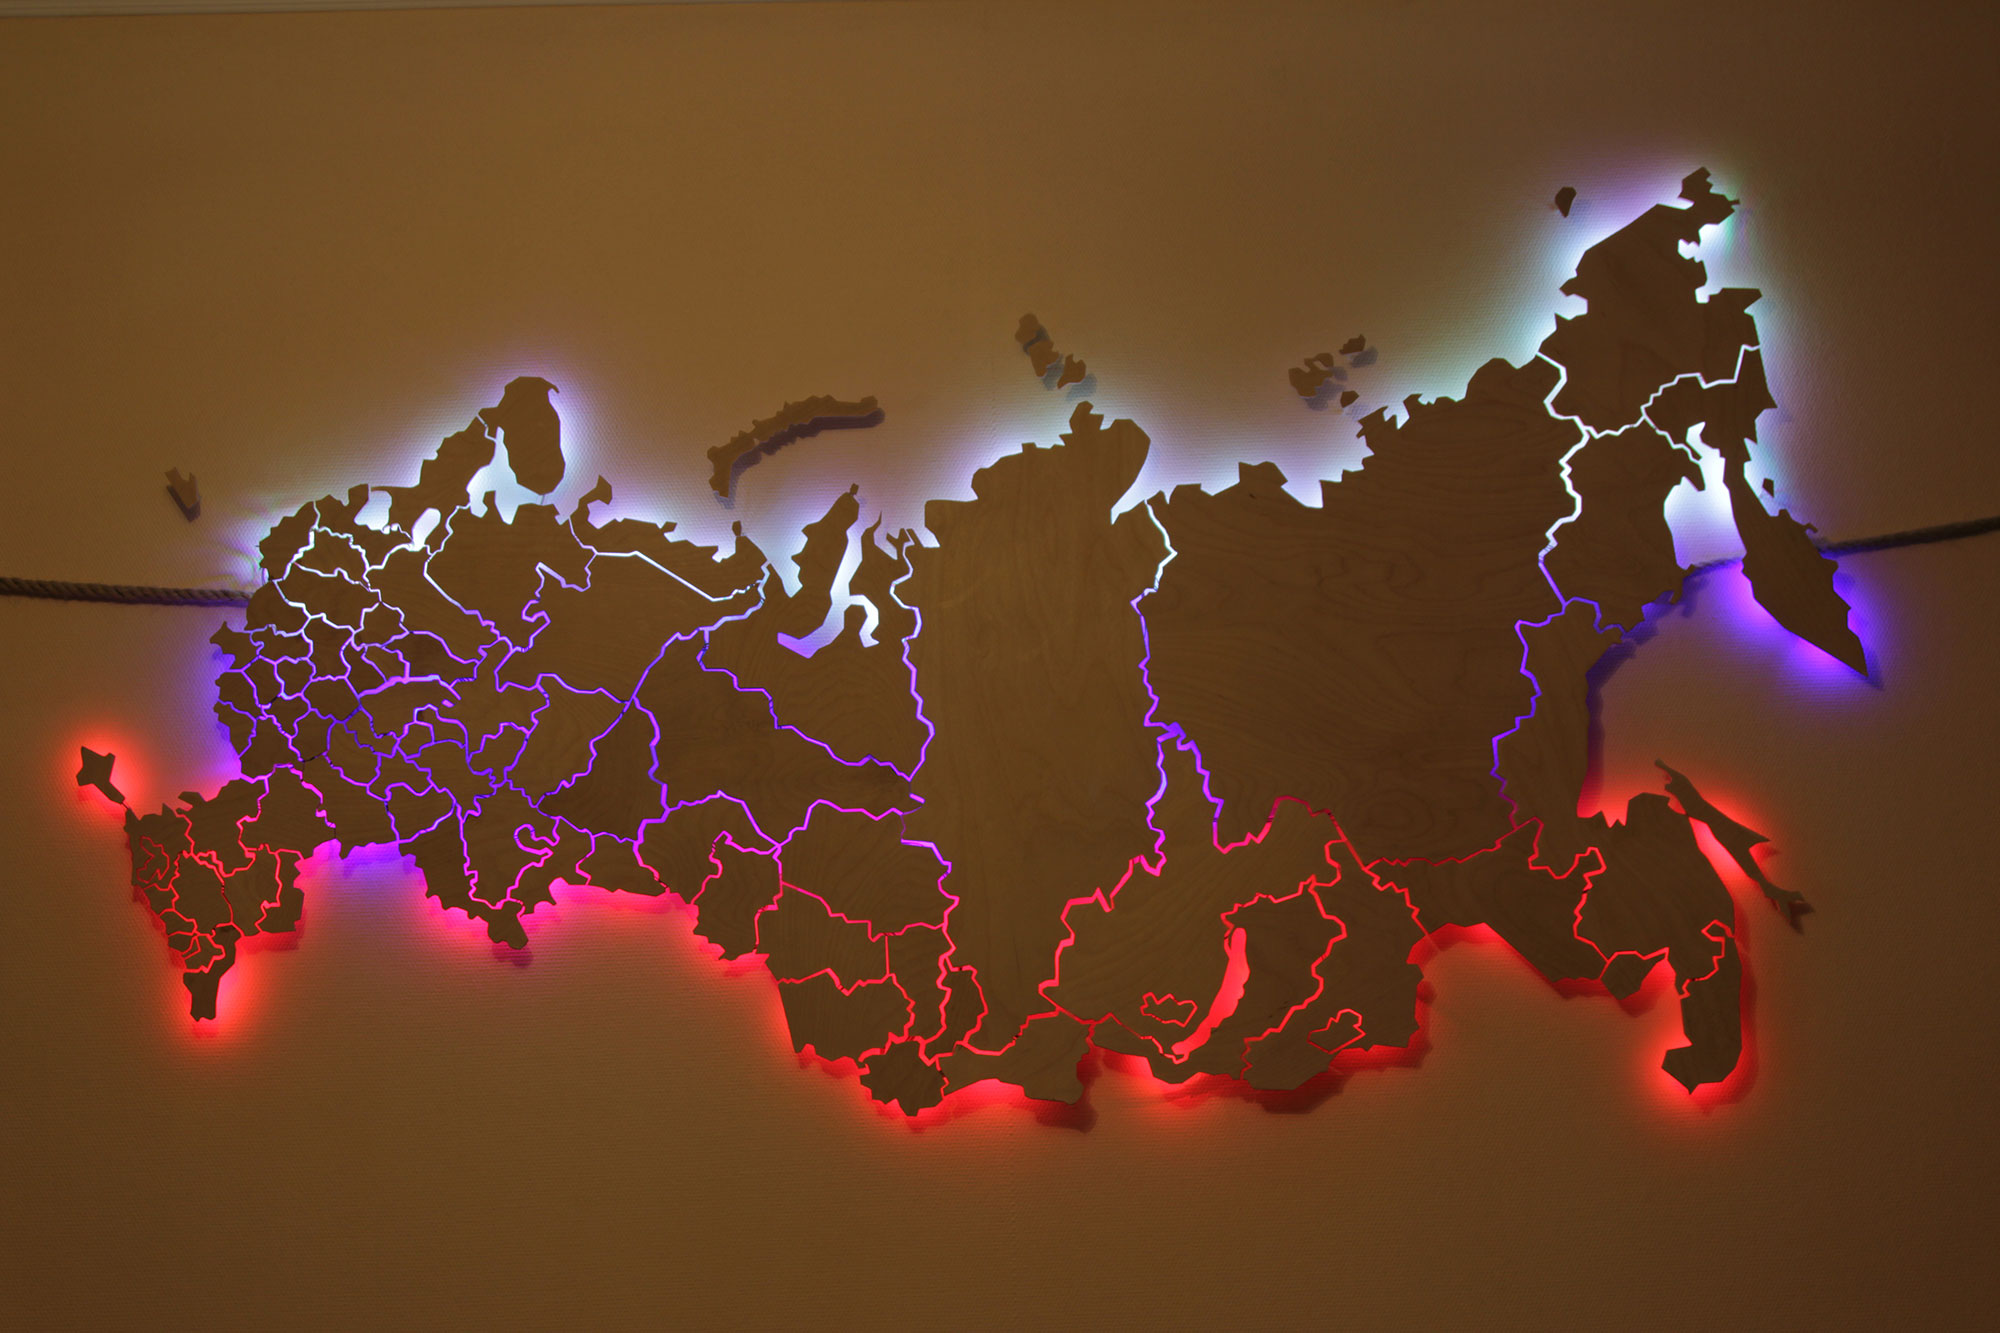 0 карта россии